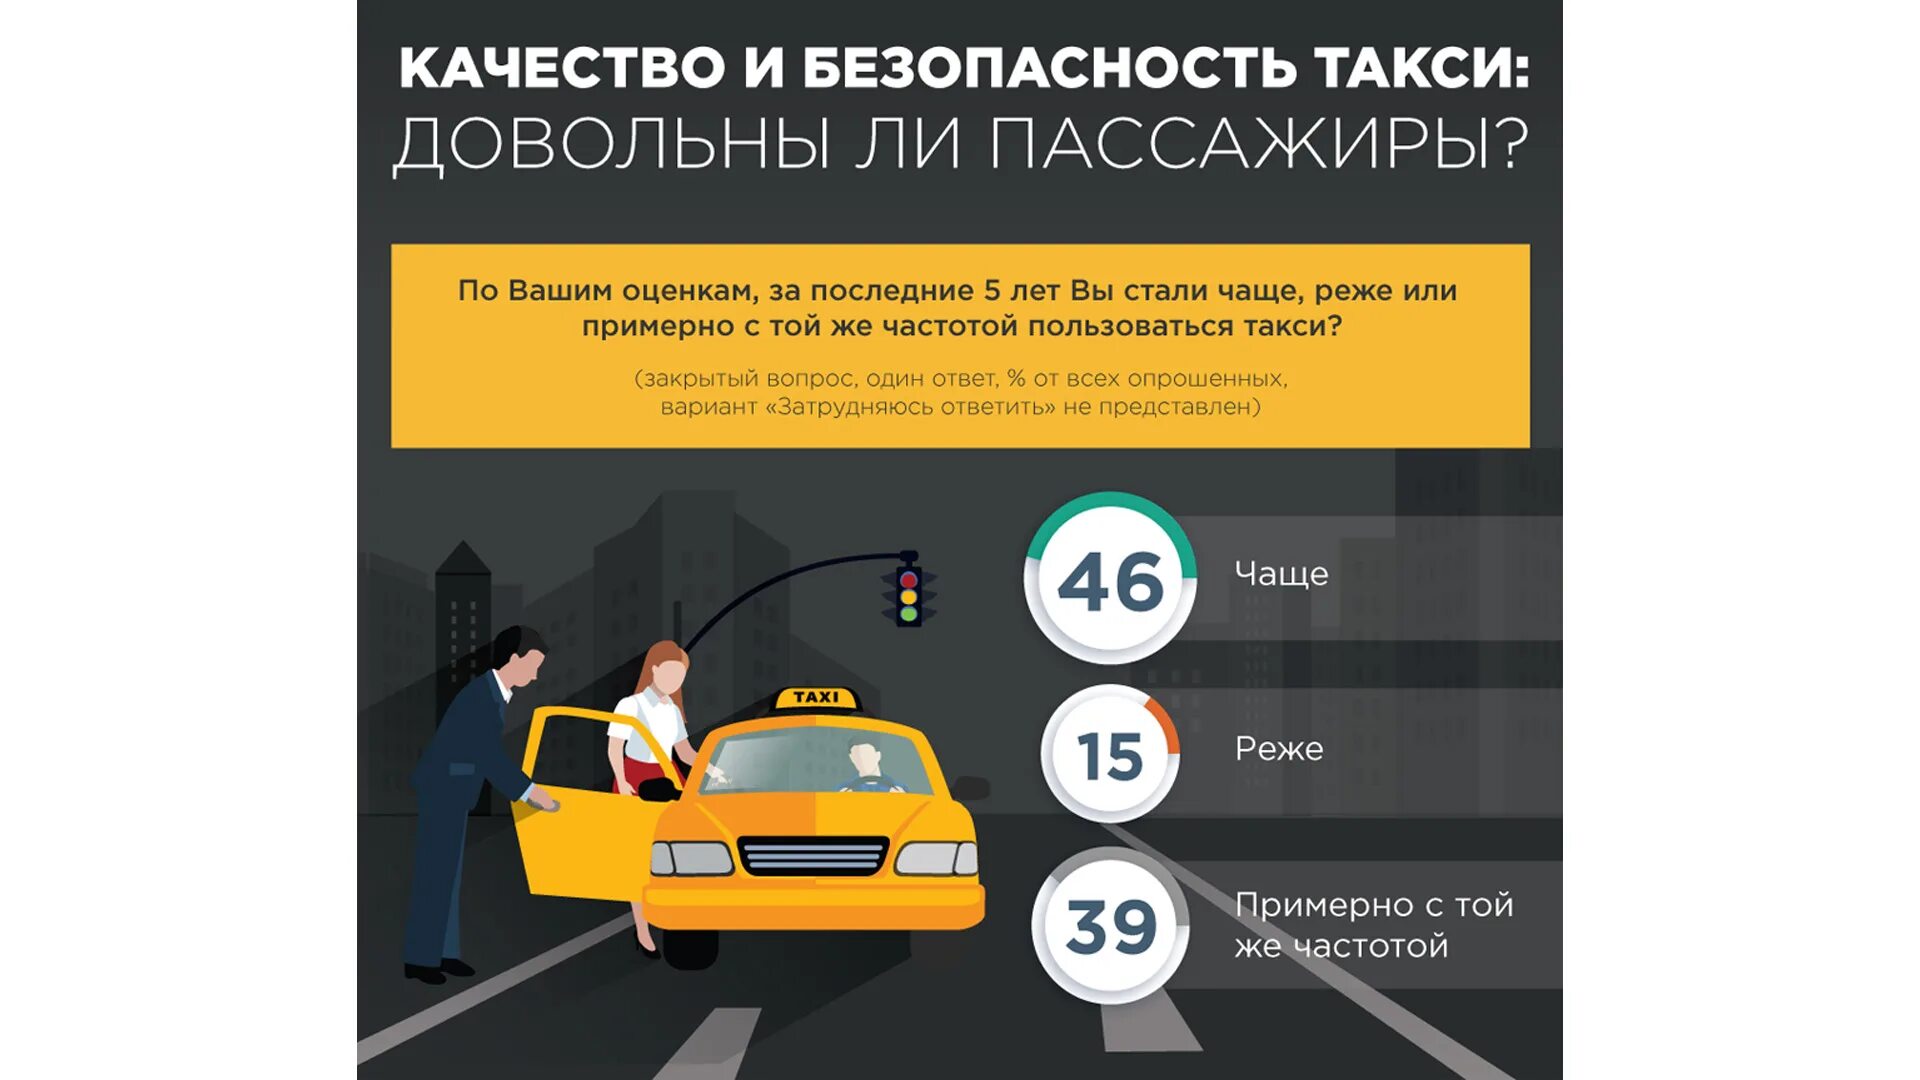 Правила для водителей такси. Безопасность в такси. Инфографика такси. Безопасность пассажира в такси. Безопасность клиента такси.